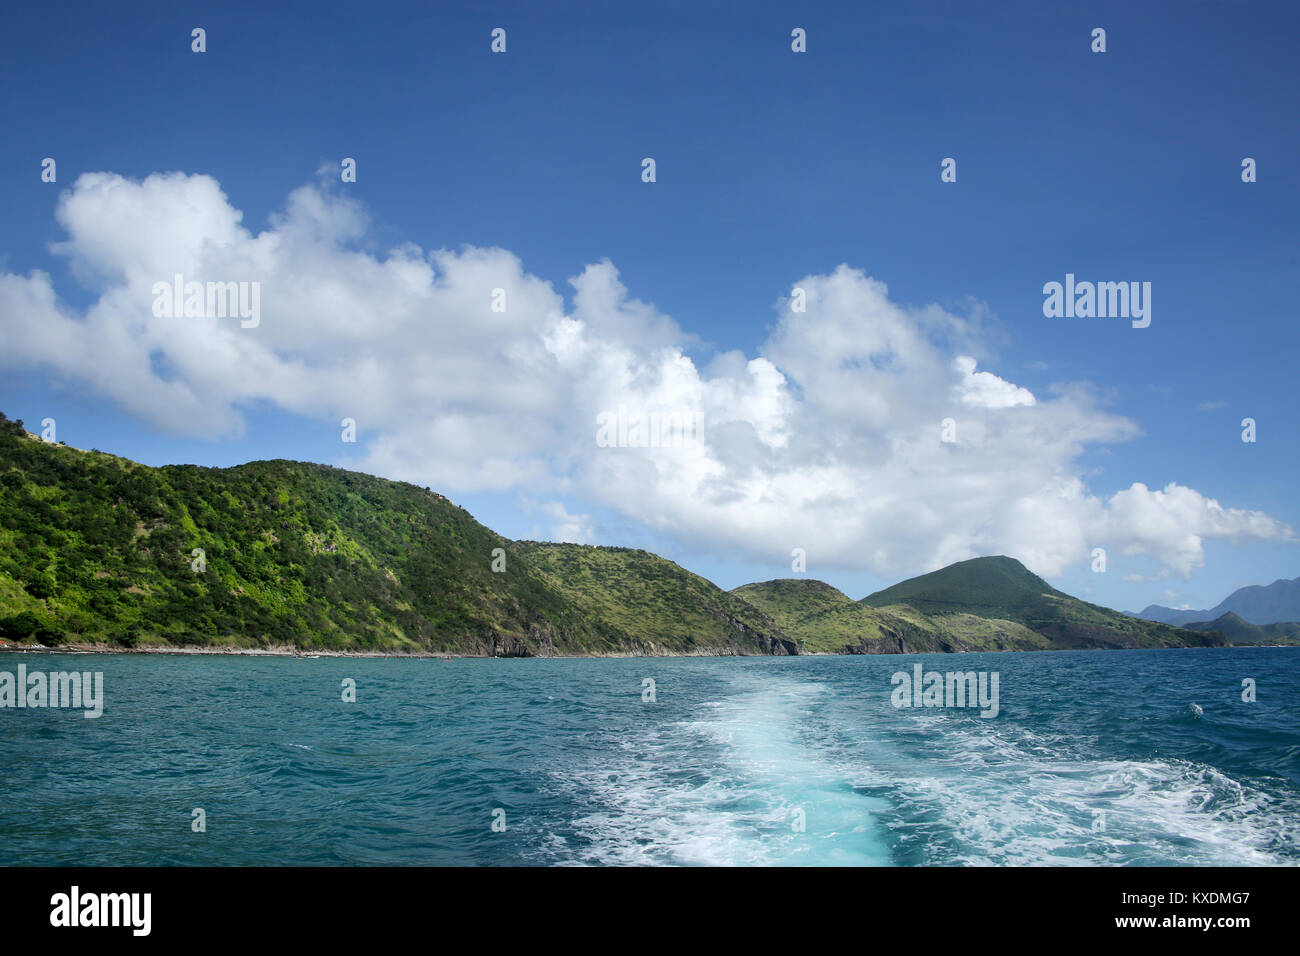 Vista de la costa desde el mar con la estela del barco, St Kitts, Caribe. Foto de stock